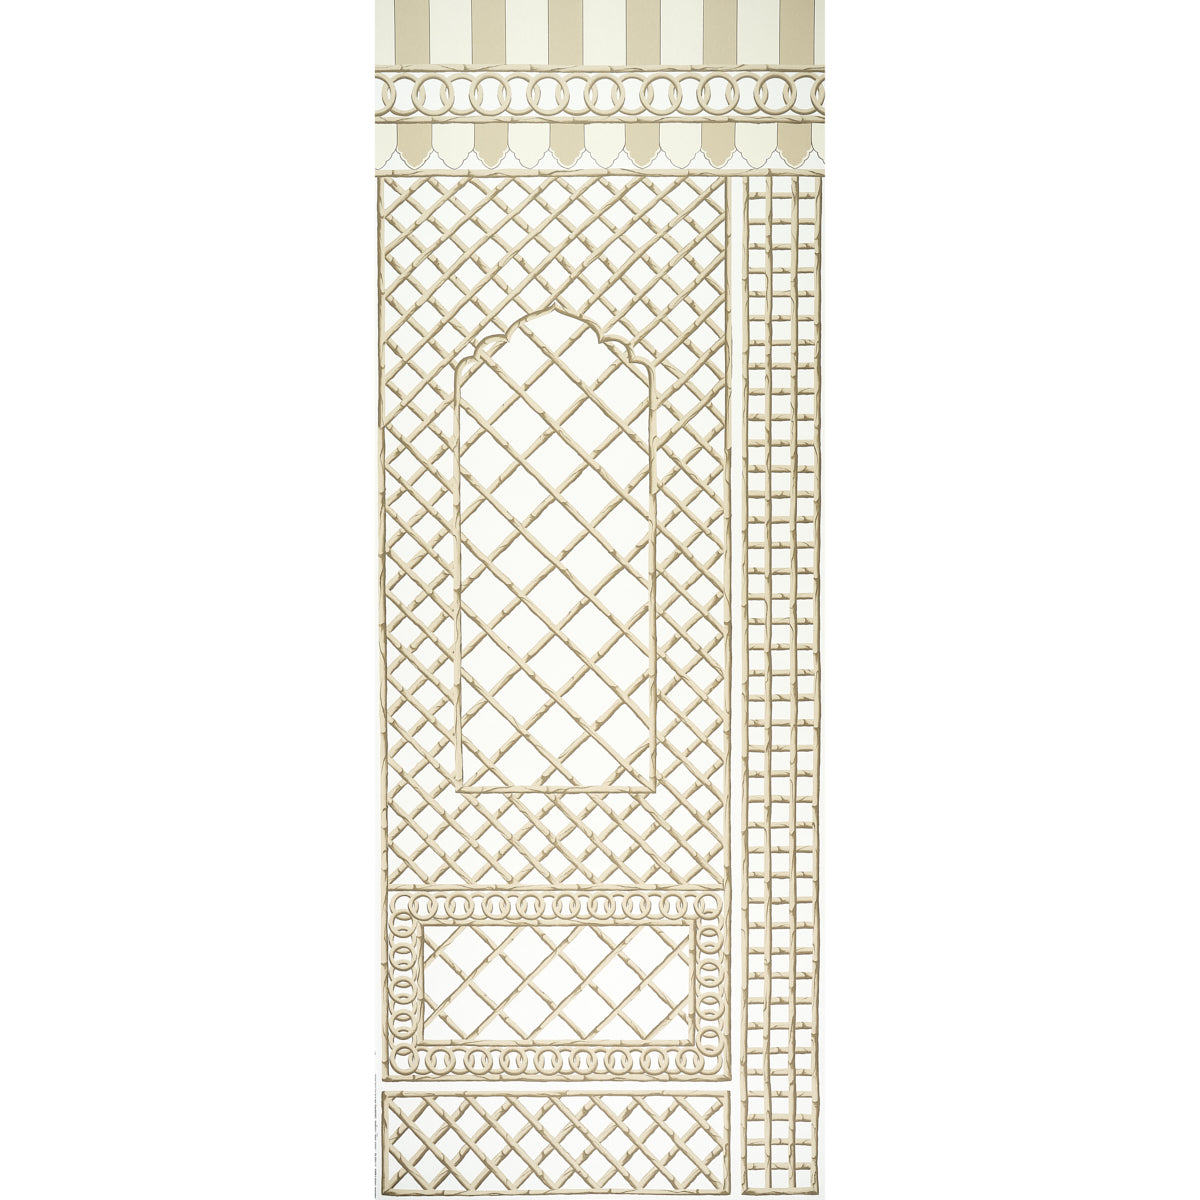 Purchase 5014402 | Bamboo Trellis Panel B, Neutral - Schumacher Wallpaper